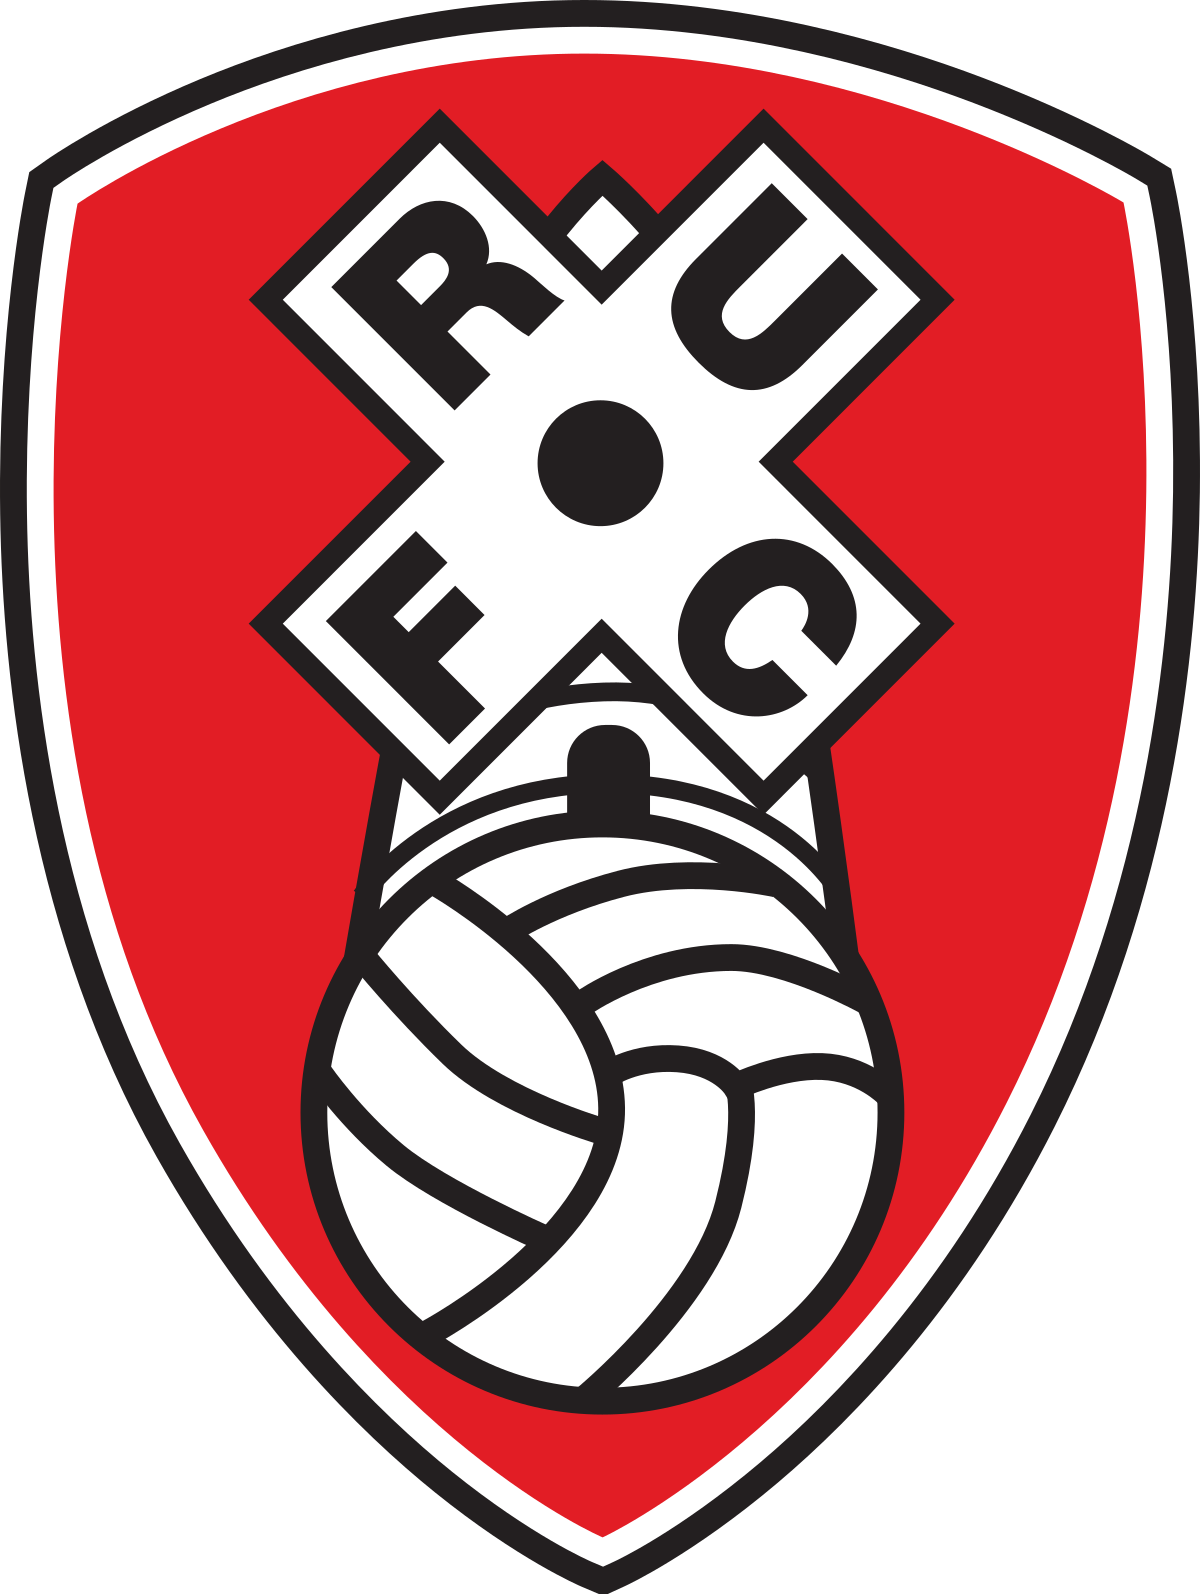 Vereinswappen - Rotherham United